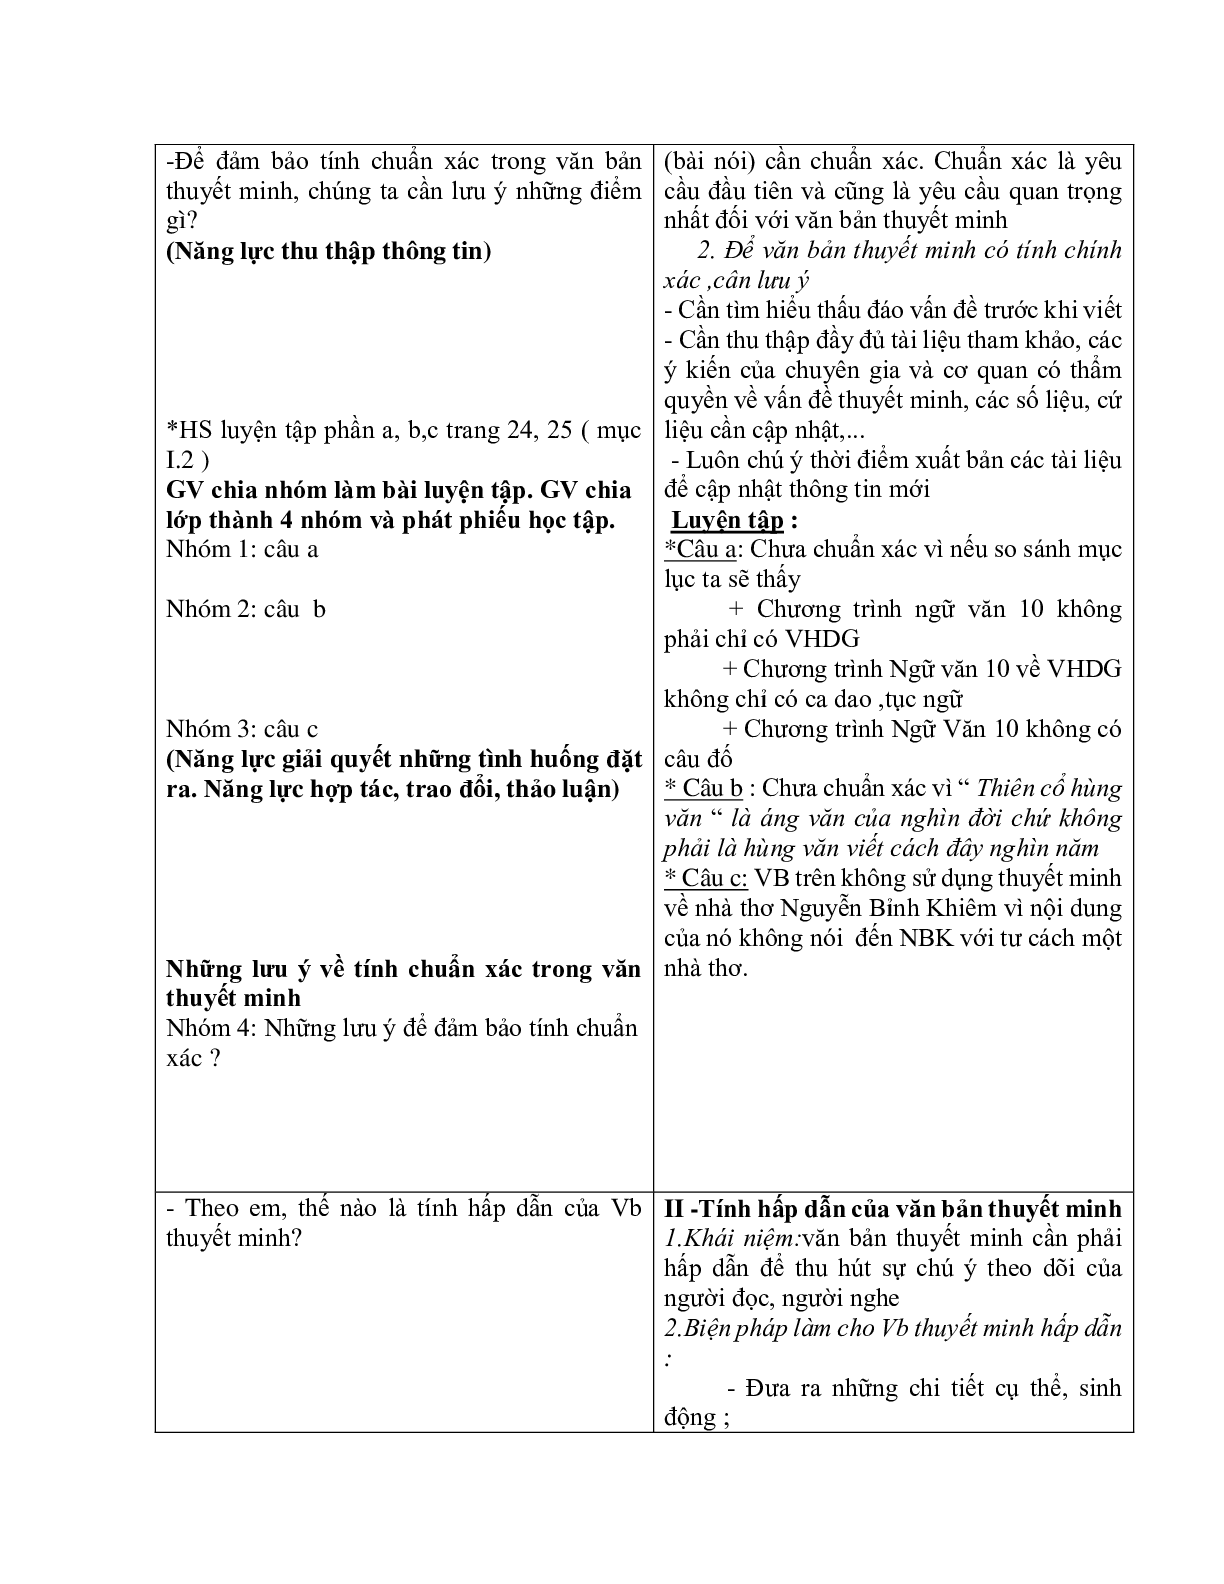 Giáo án ngữ văn lớp 10 Tiết 60: Tính chuẩn xác, hấp dẫn của văn bản thuyết minh (trang 3)